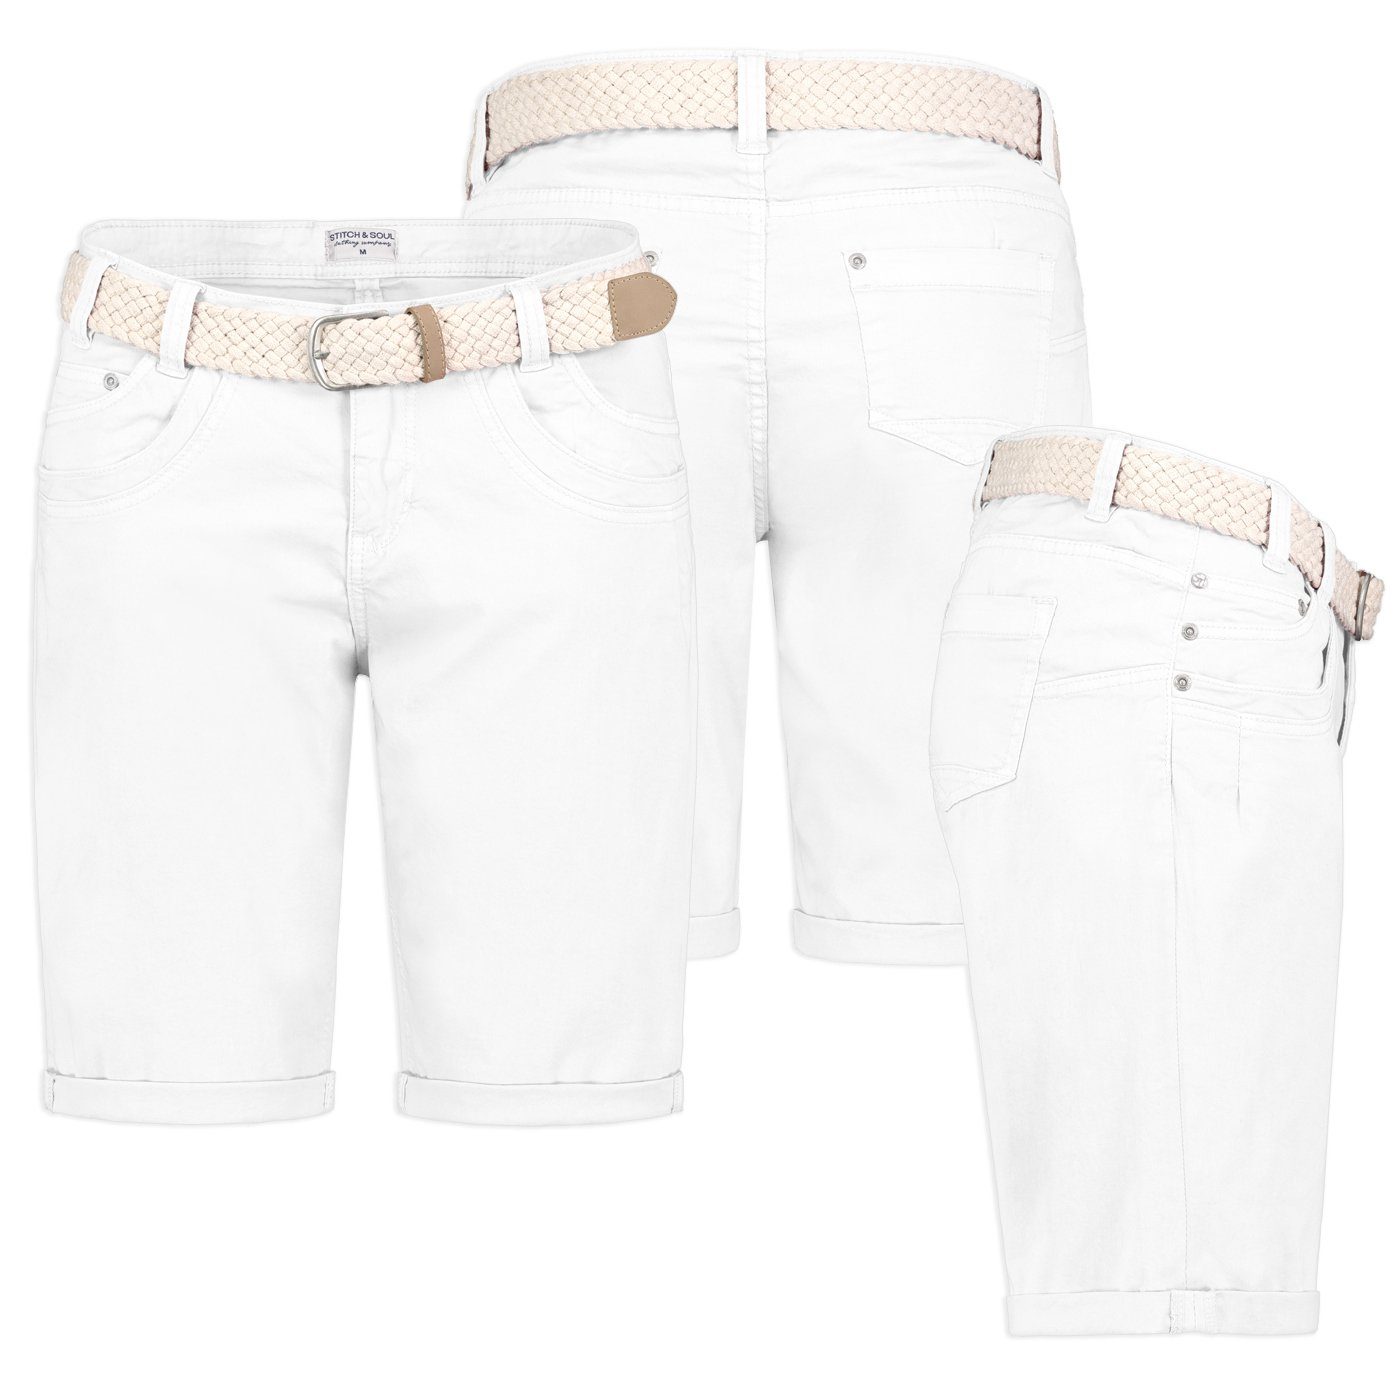 Stitch & Soul Bermudas Damen Short Bermuda kurze Hose Sommer Chino Stoff Hose mit Gürtel Weiß